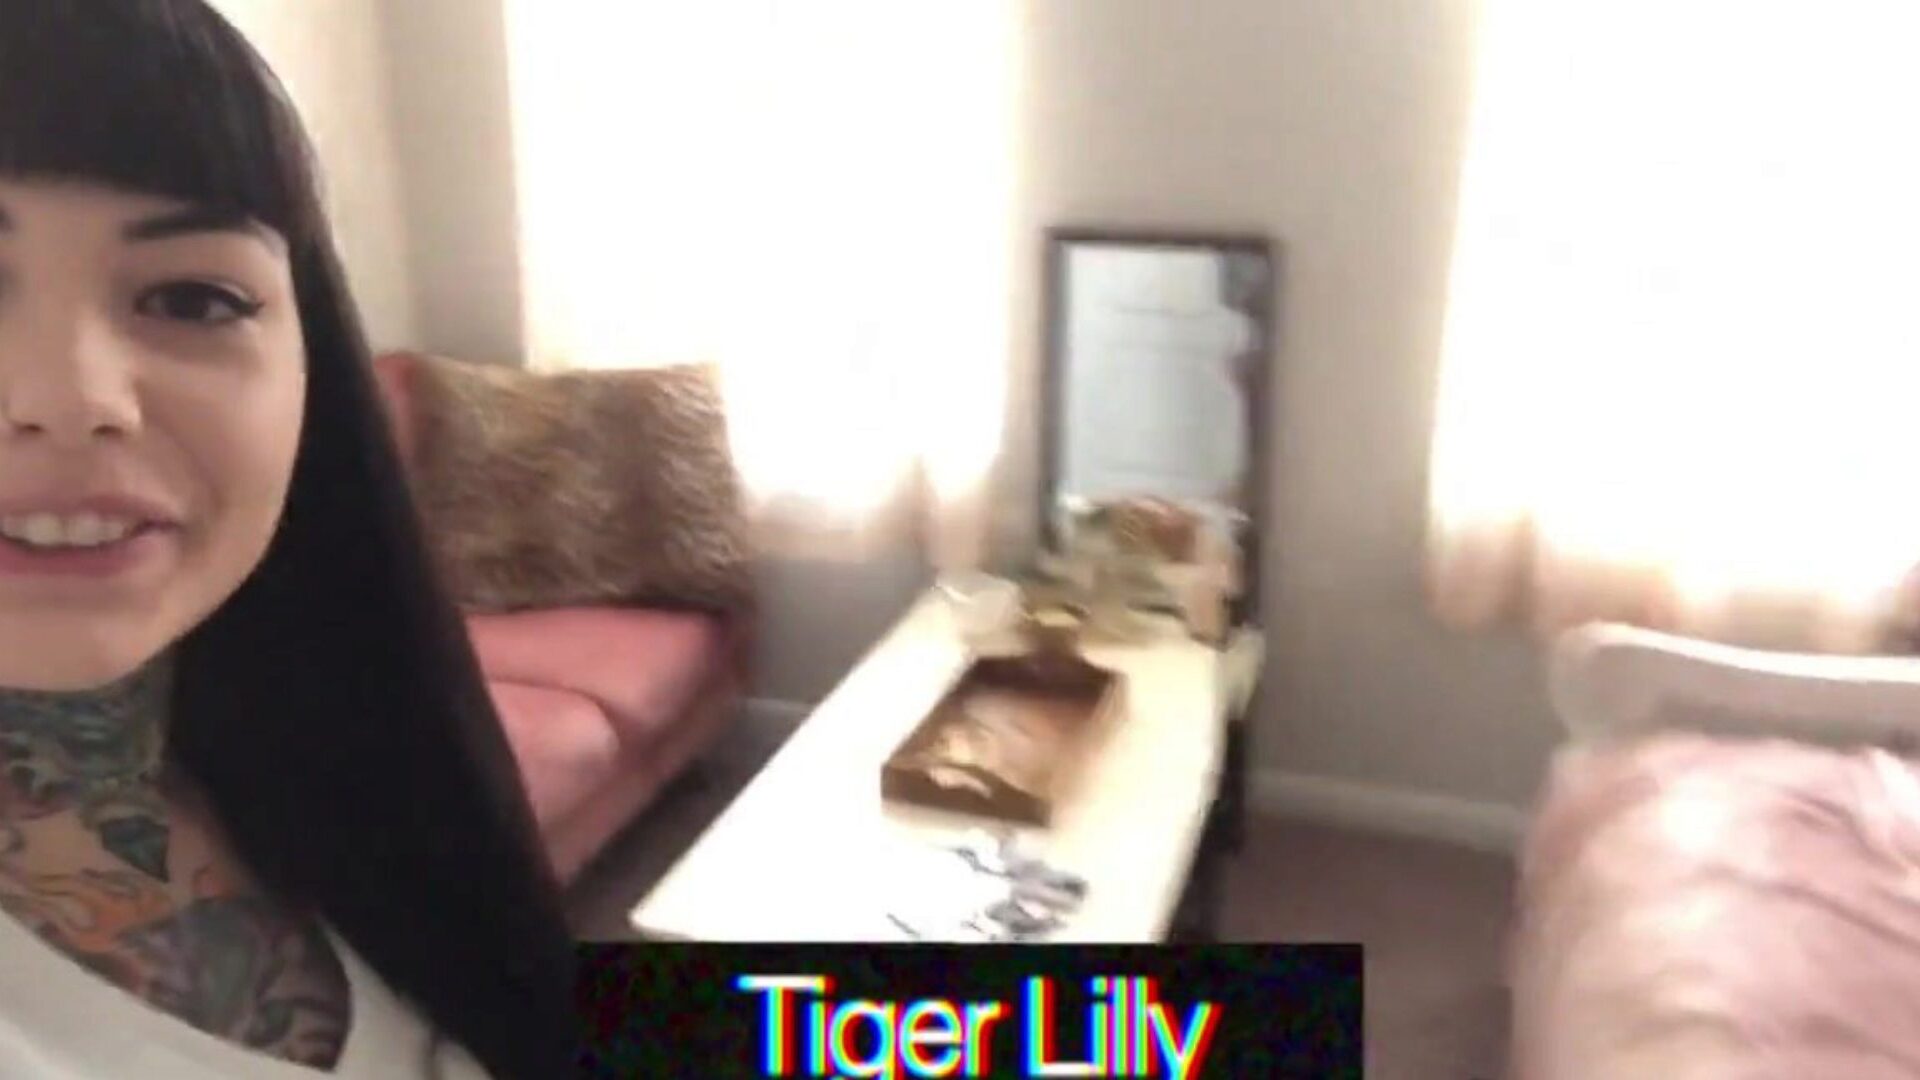 tätowierter Tiger Lilly Draining während der Quarantäne